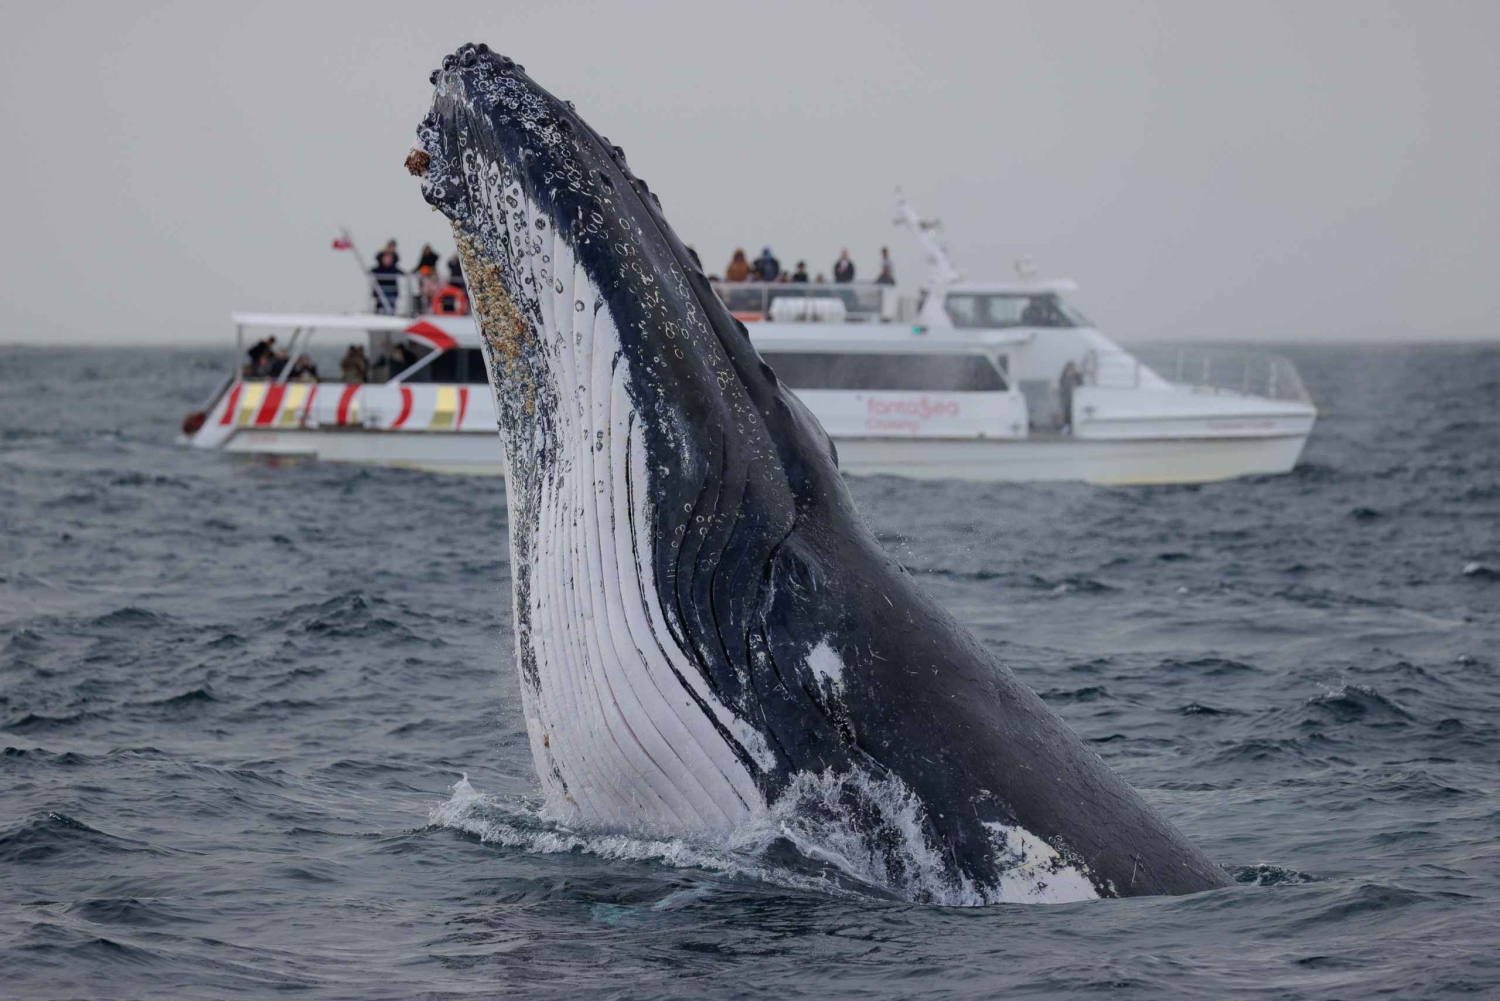 Sydney : Croisière express de 2 heures pour observer les baleines